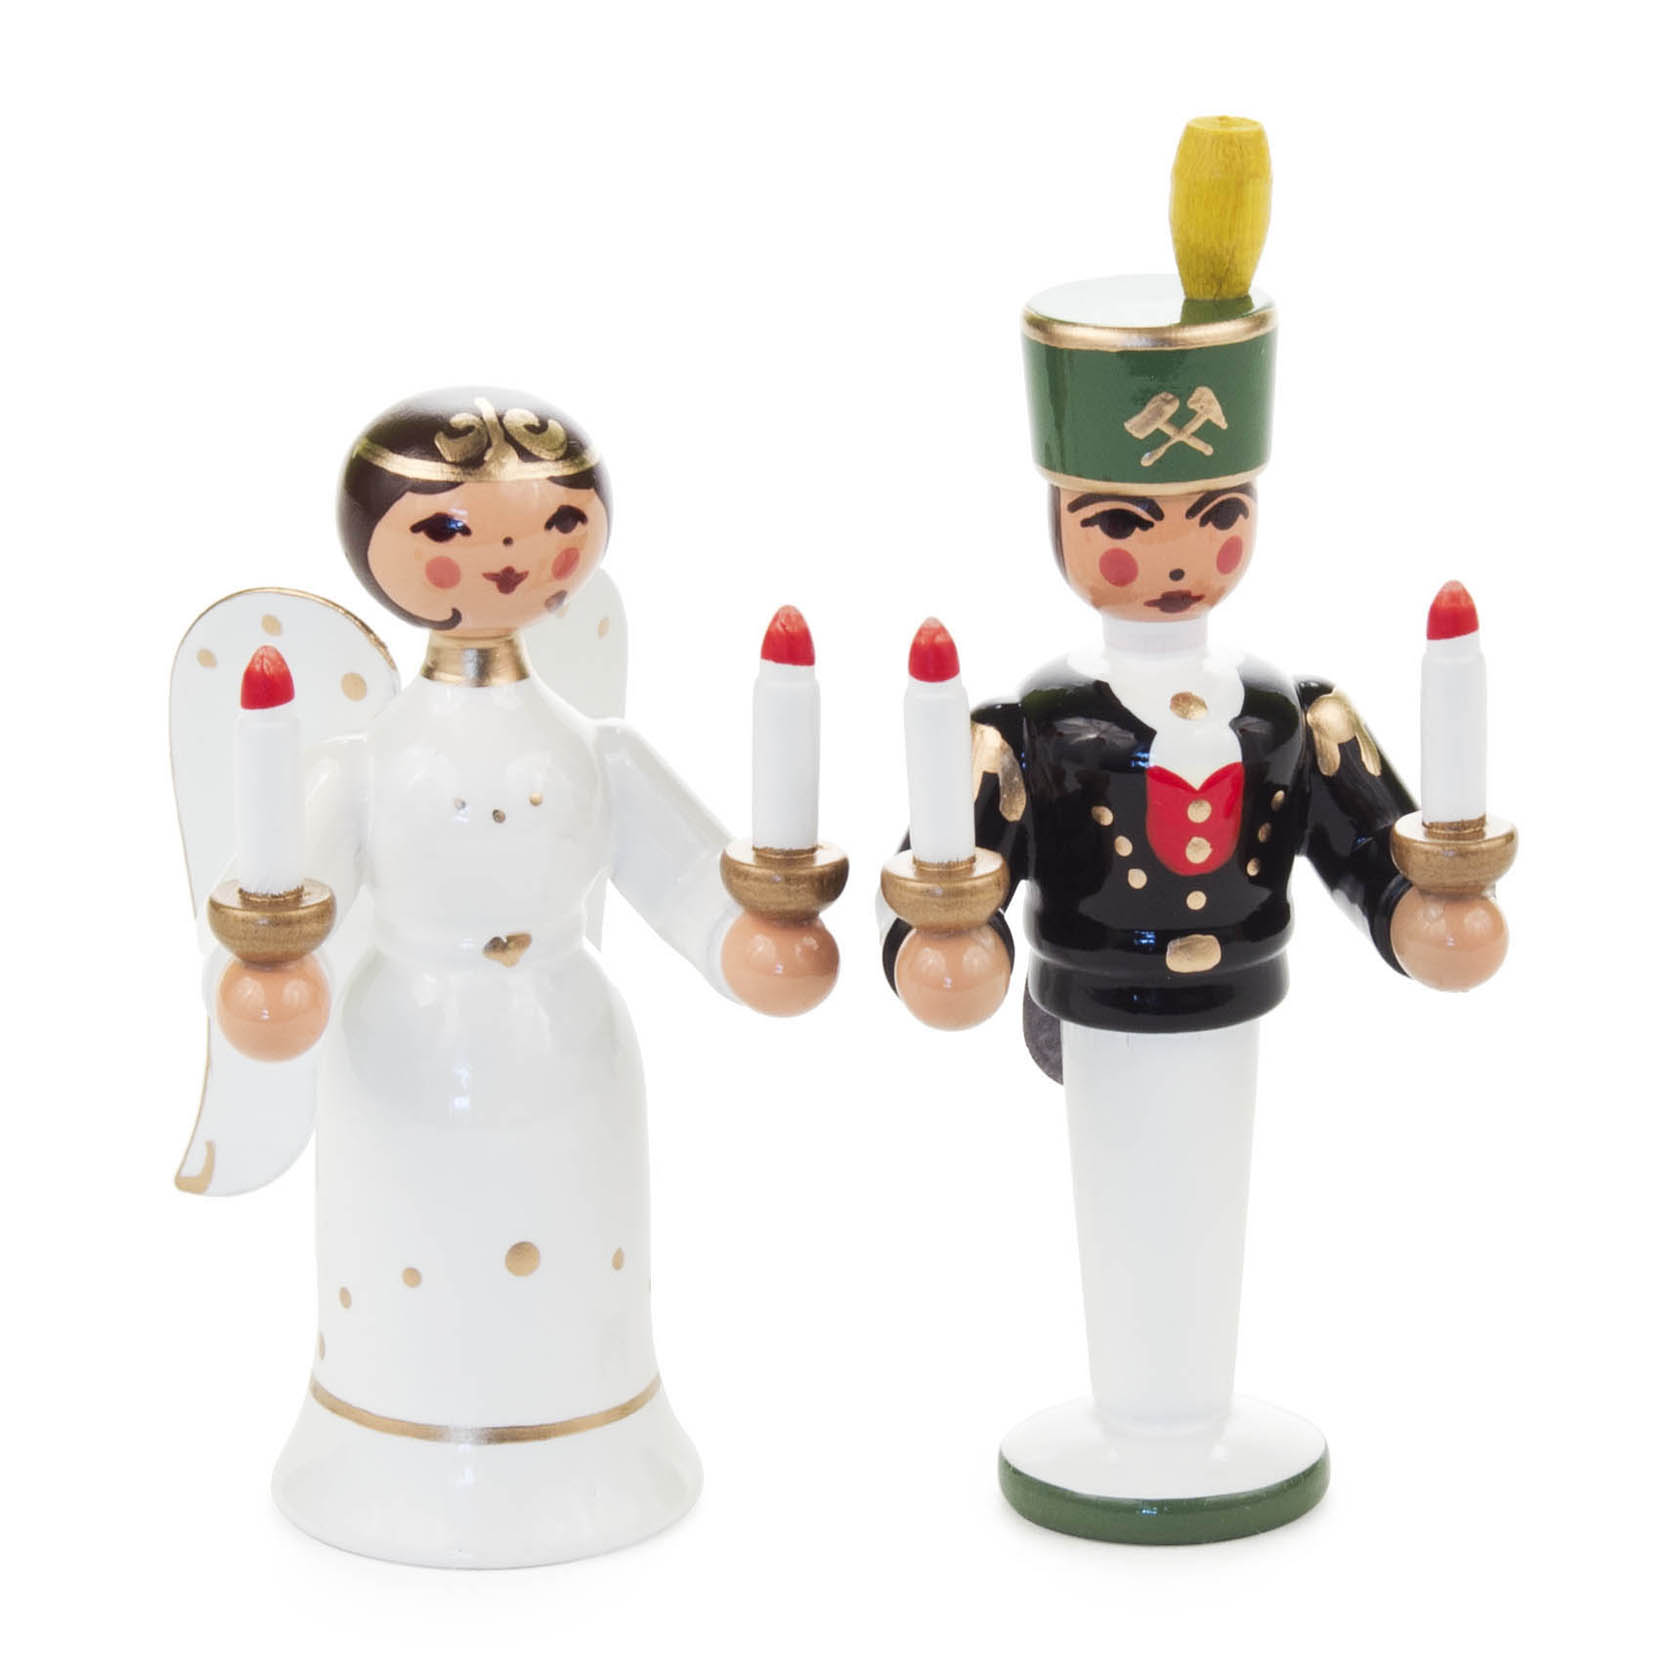 Miniatur Engel und Bergmann im Dregeno Online Shop günstig kaufen